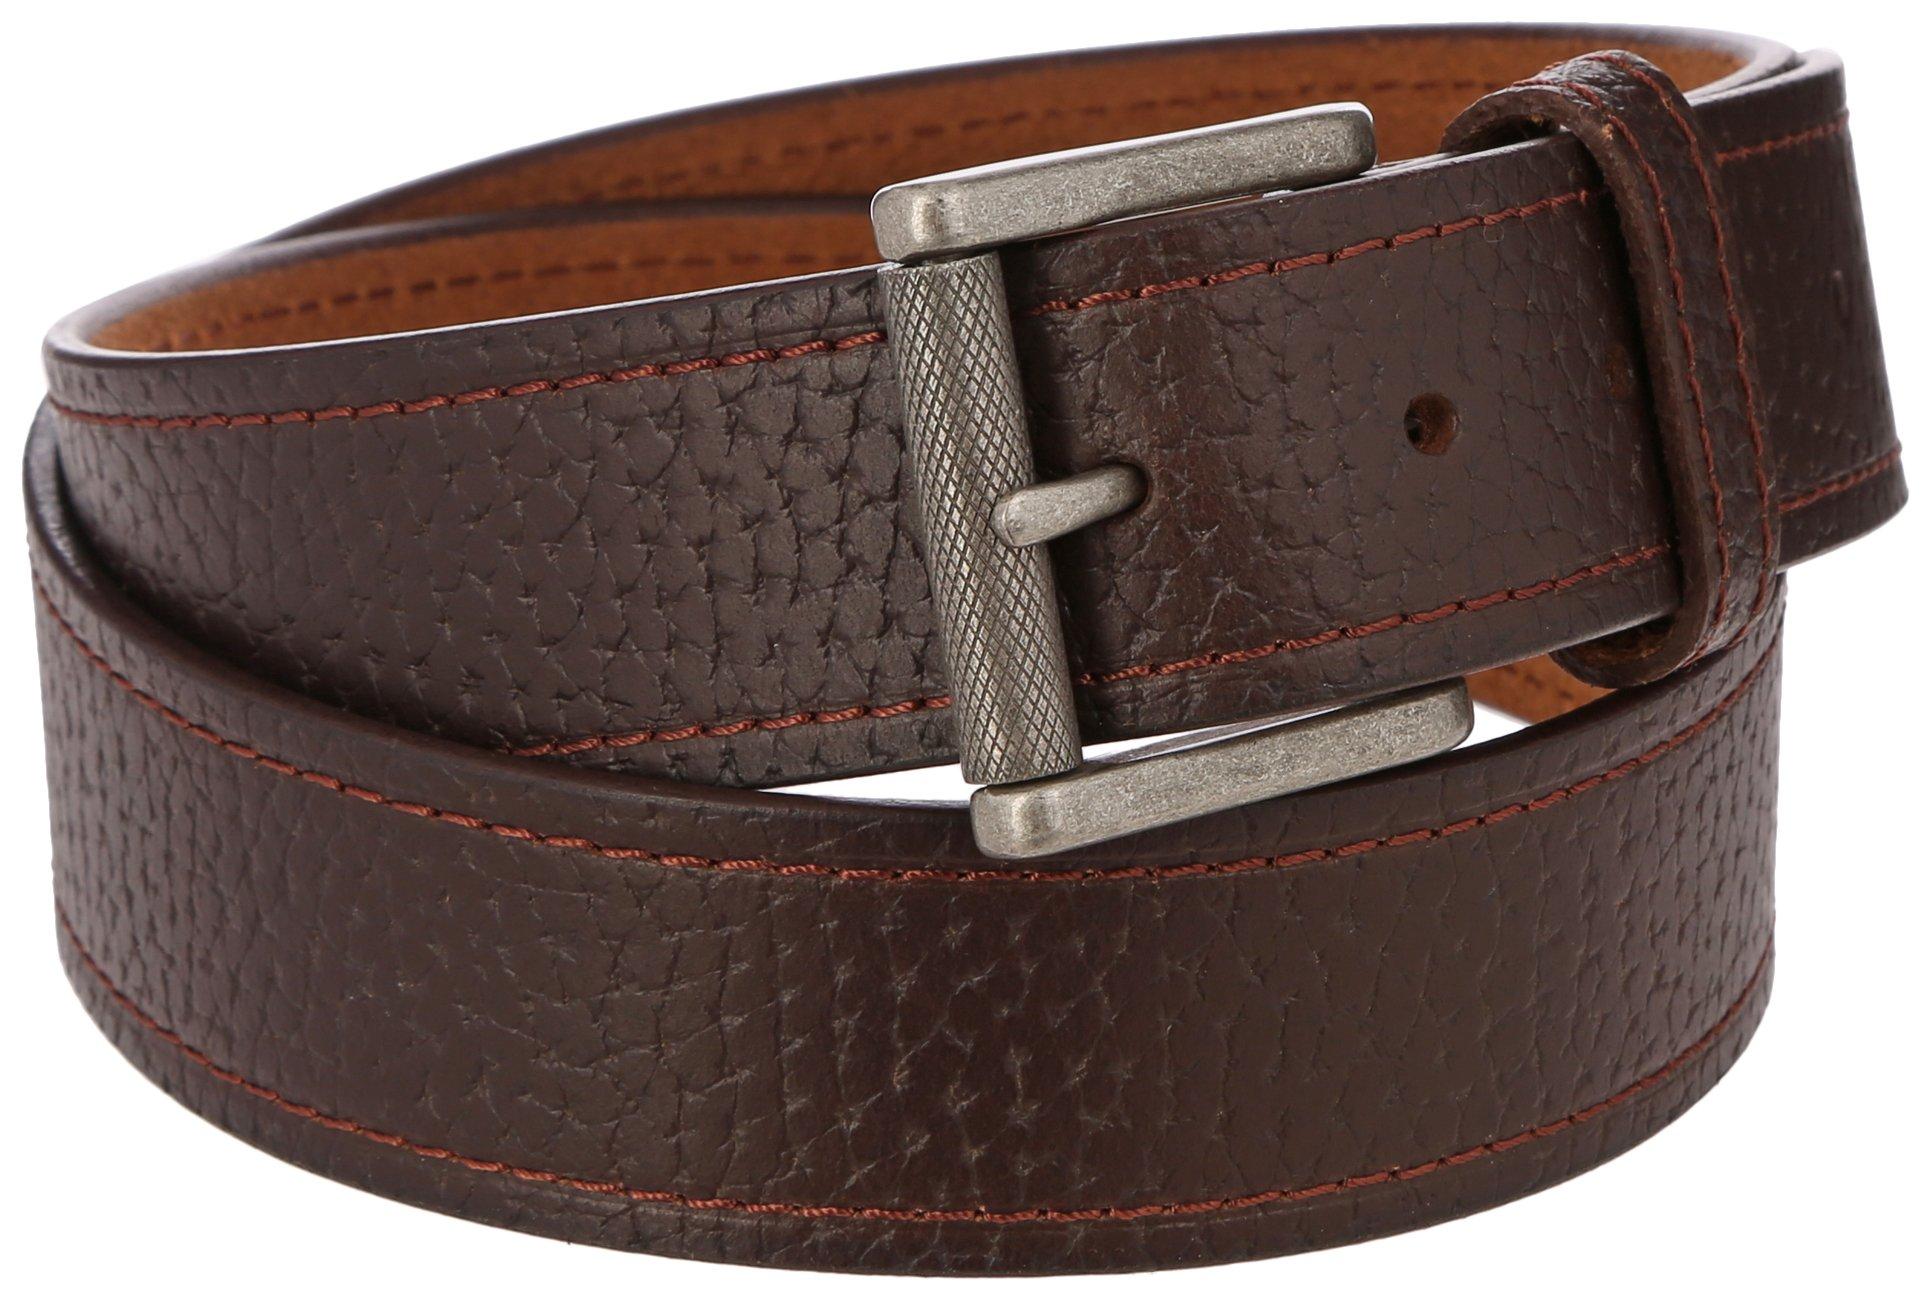 Wrangler Mens 40MM Solid Color Textured Leather Belt